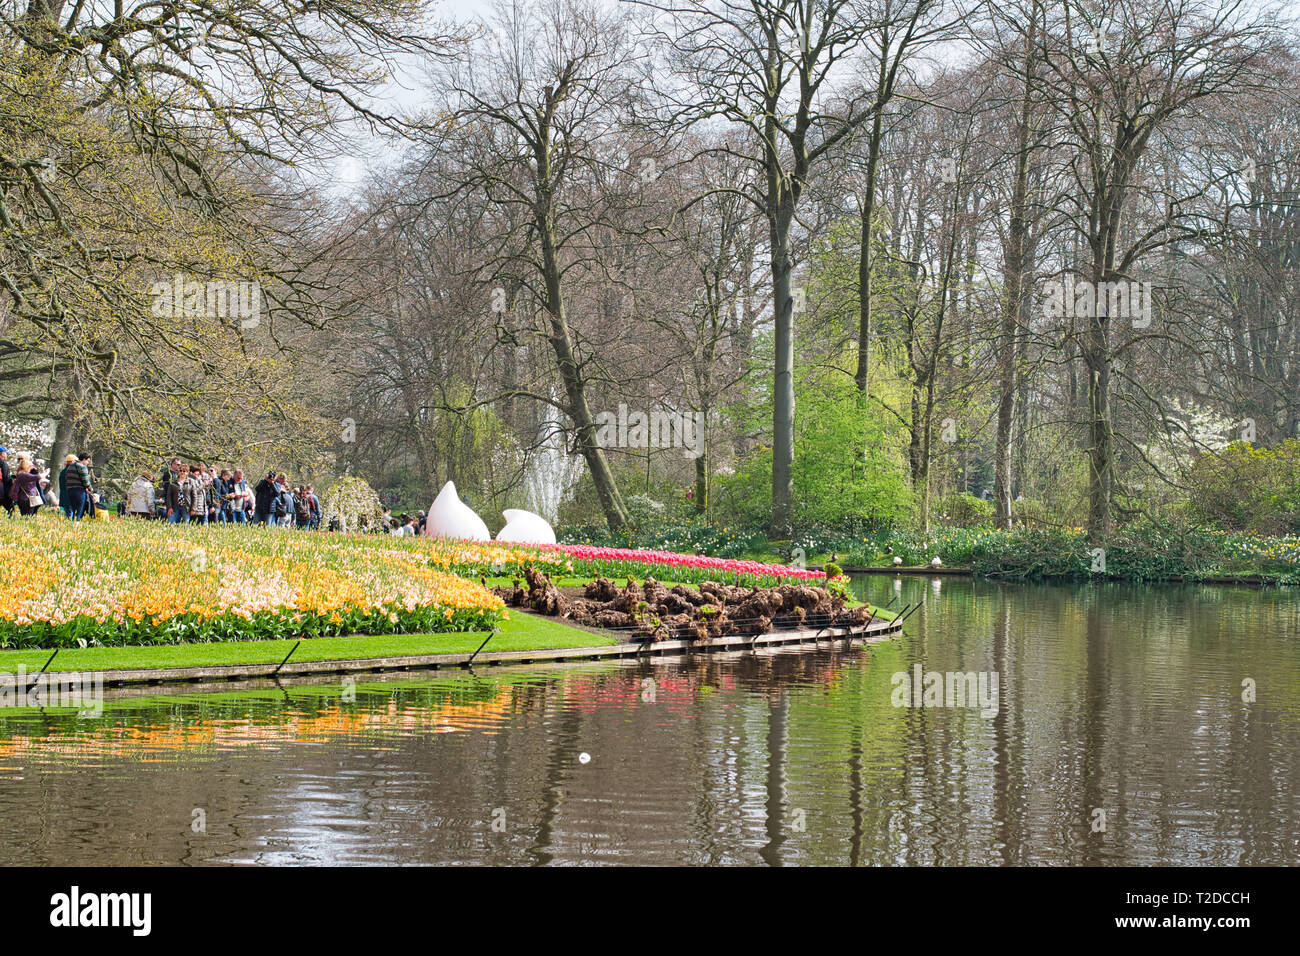 LISSE, NETHERLANDS - APRIL 15, 2018: Flower Festival at Keukenhof Park Stock Photo